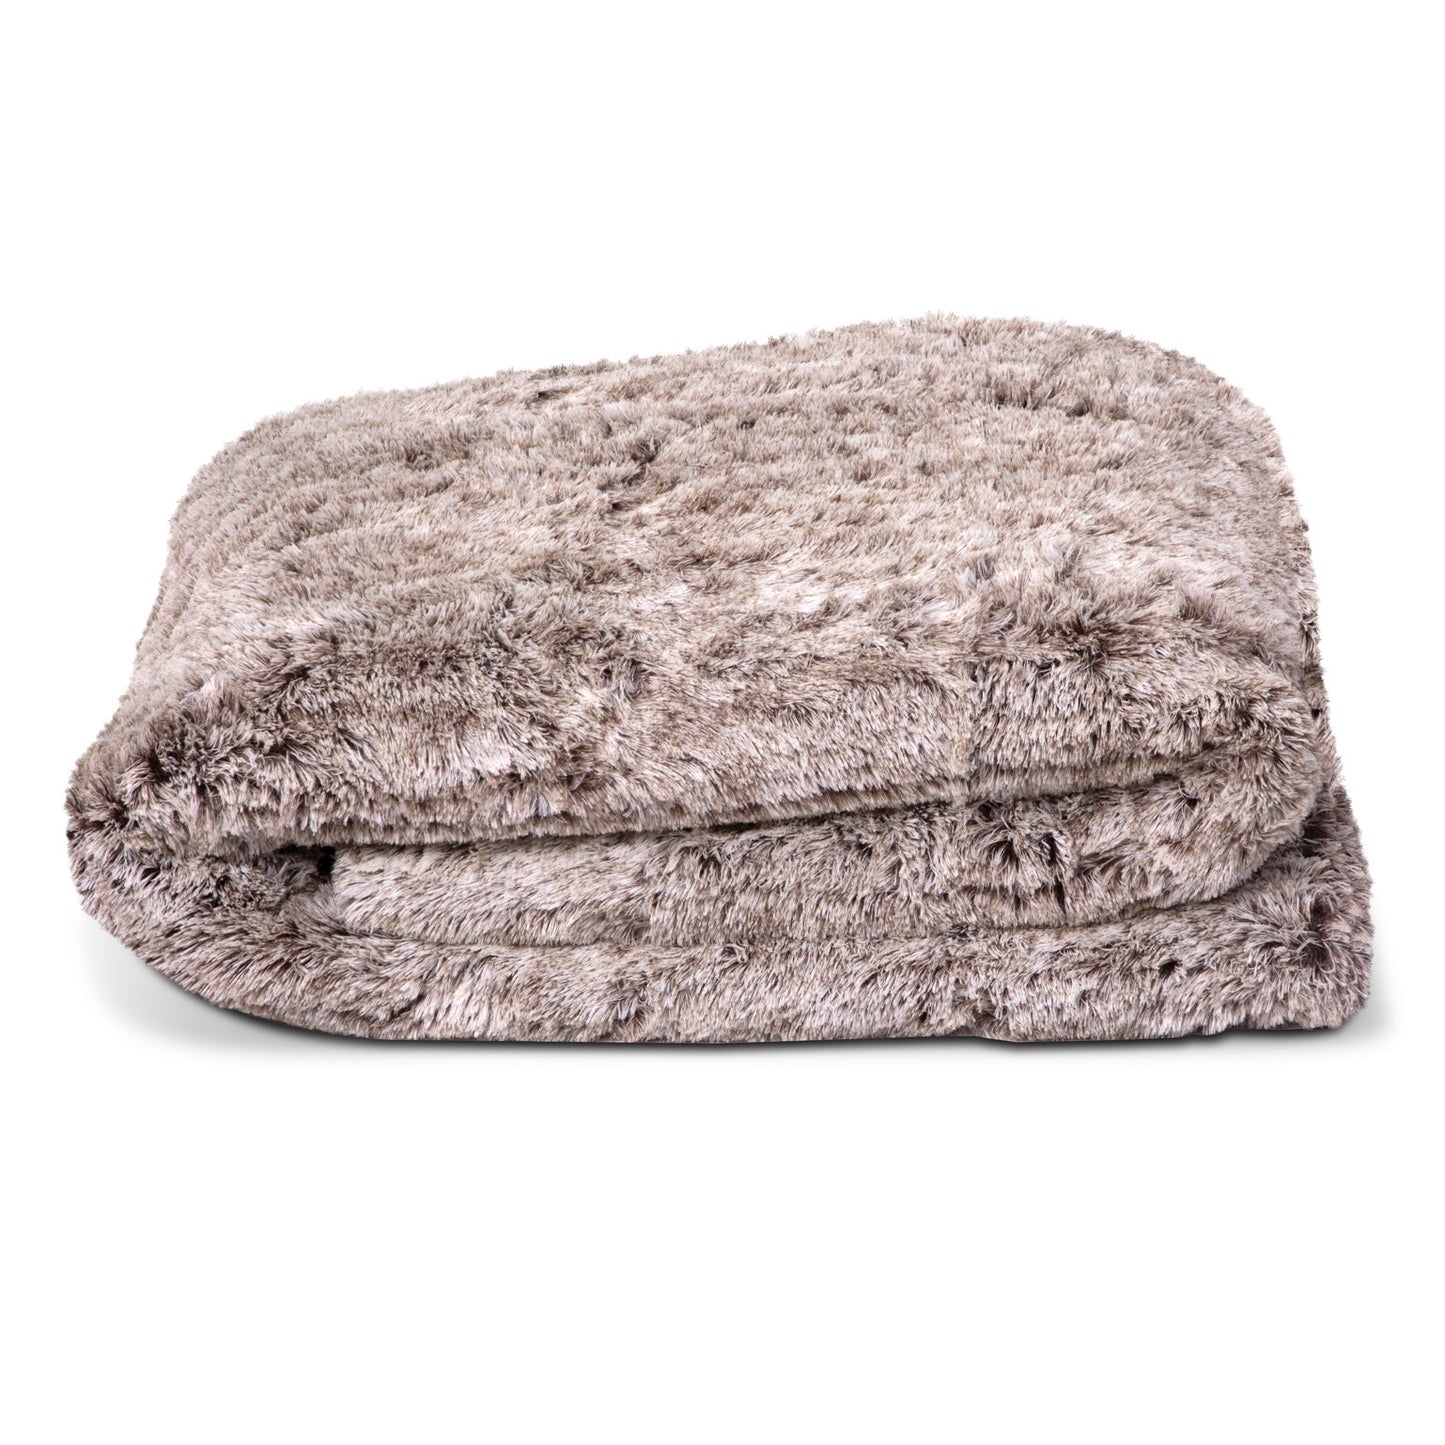 Glacial Cobertor Platino Súper Soft